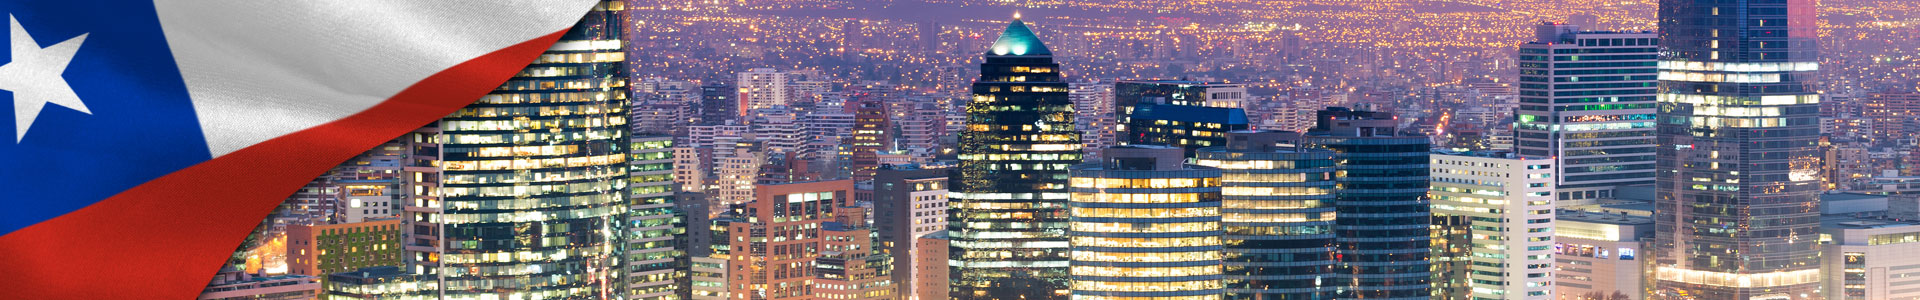 Bandera de Chile con modernos edificios de oficinas 